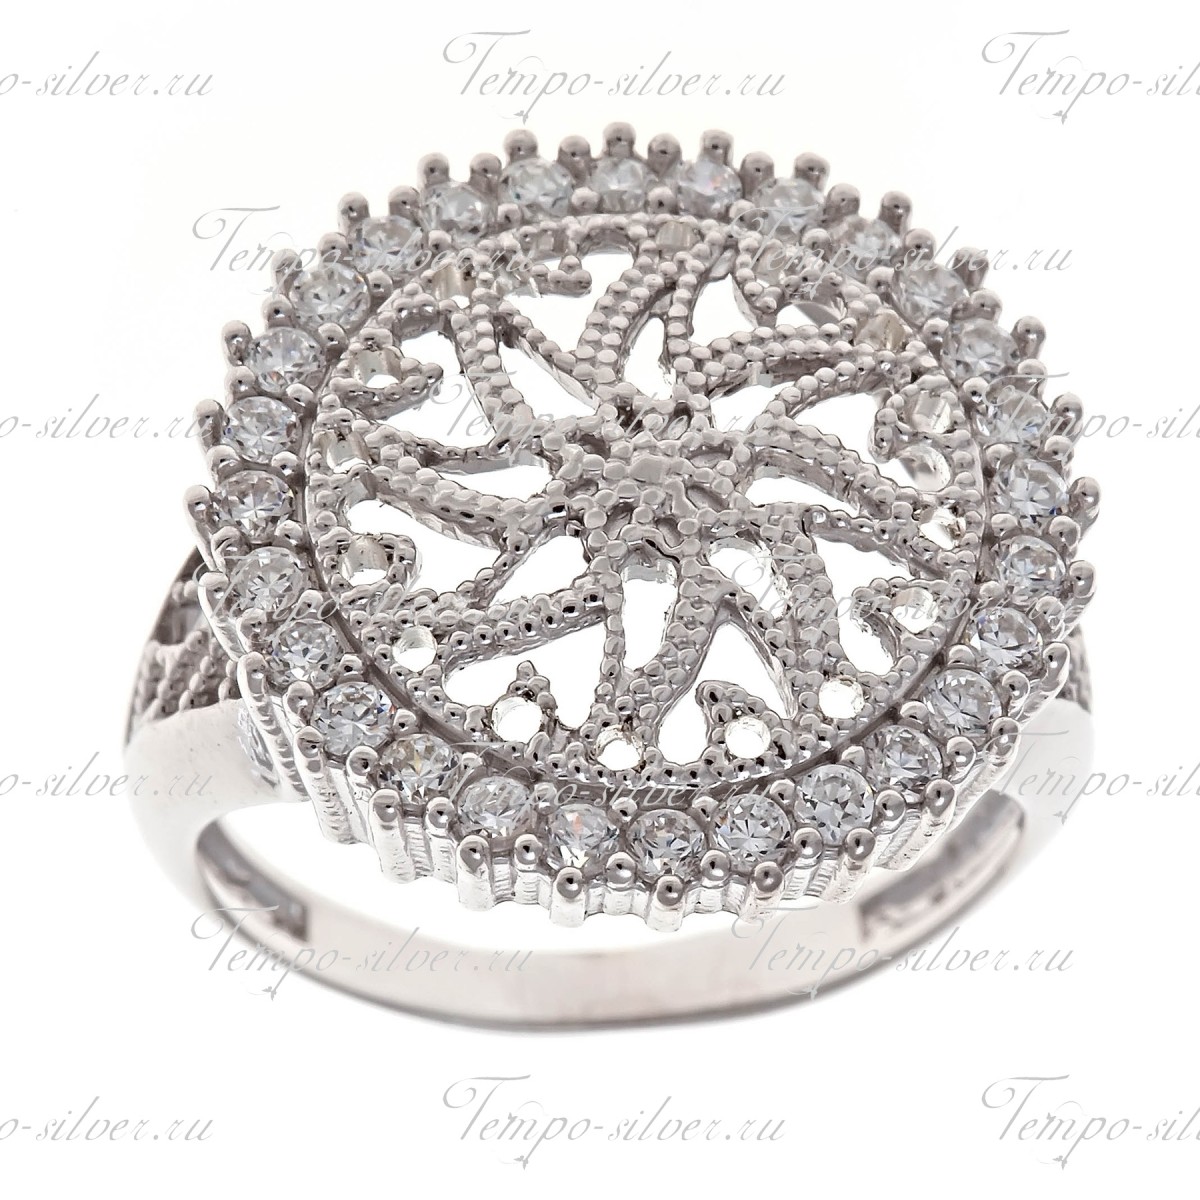 Кольцо из серебра круглой формы с выпиленным узором по центру и белыми камнями по кругу цена